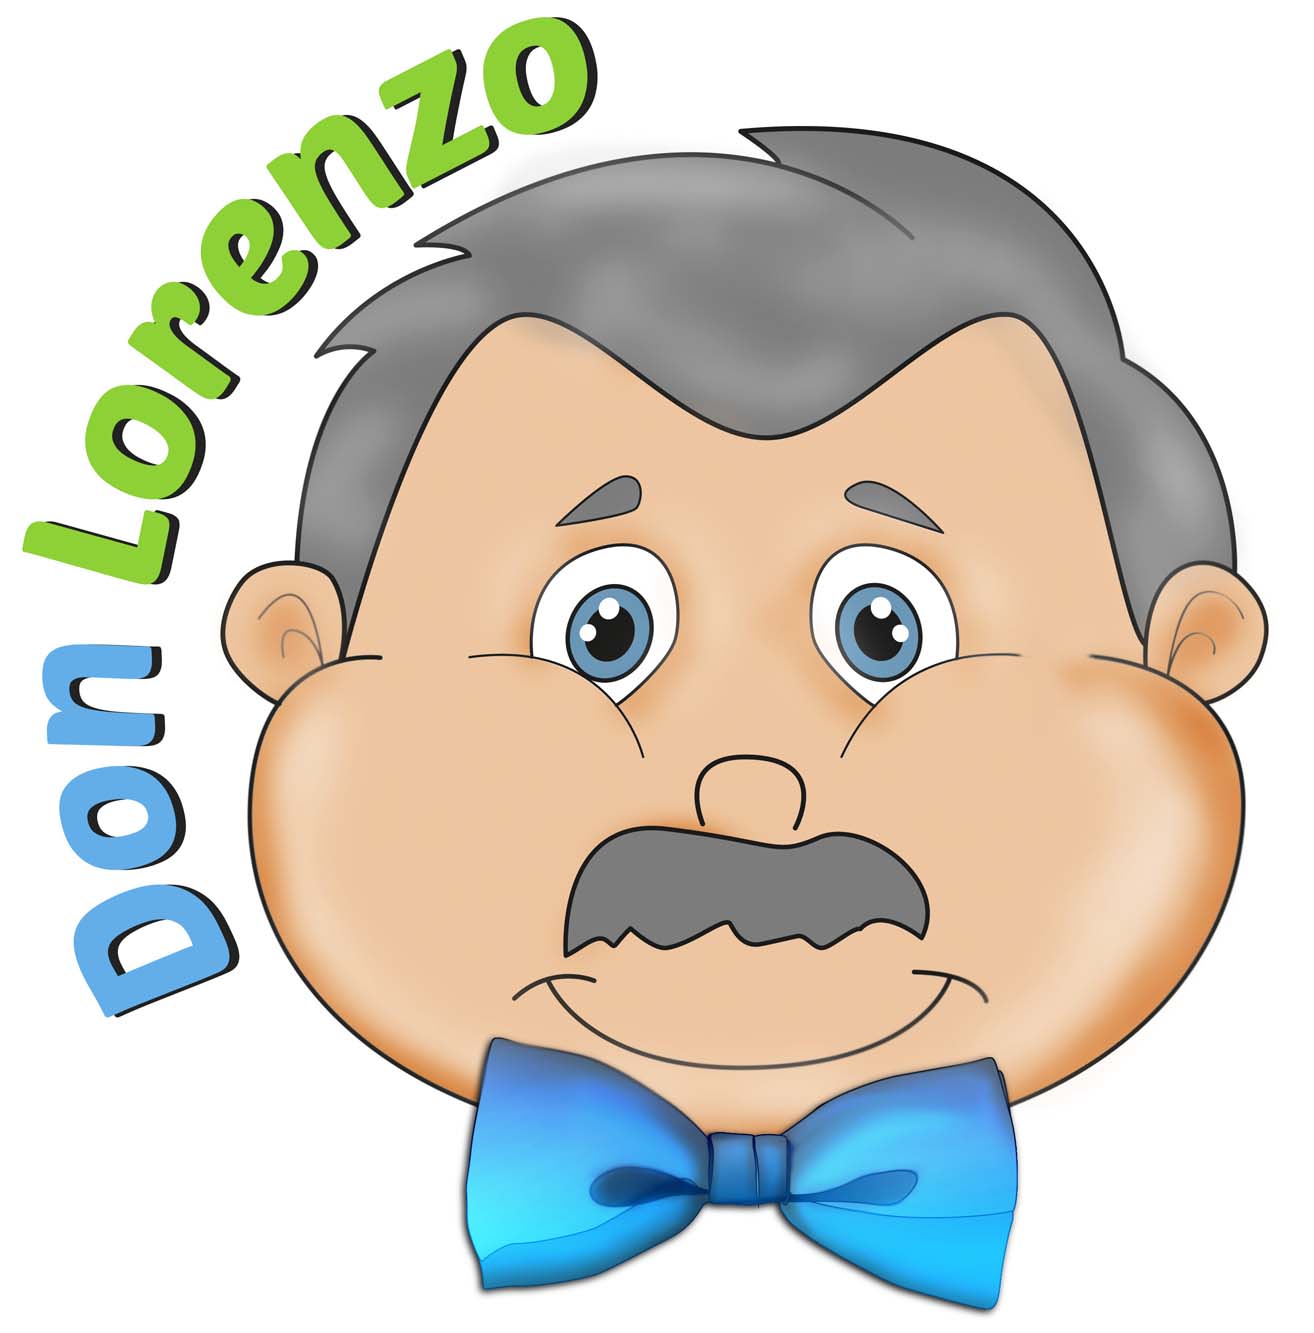 Don Lorenzo